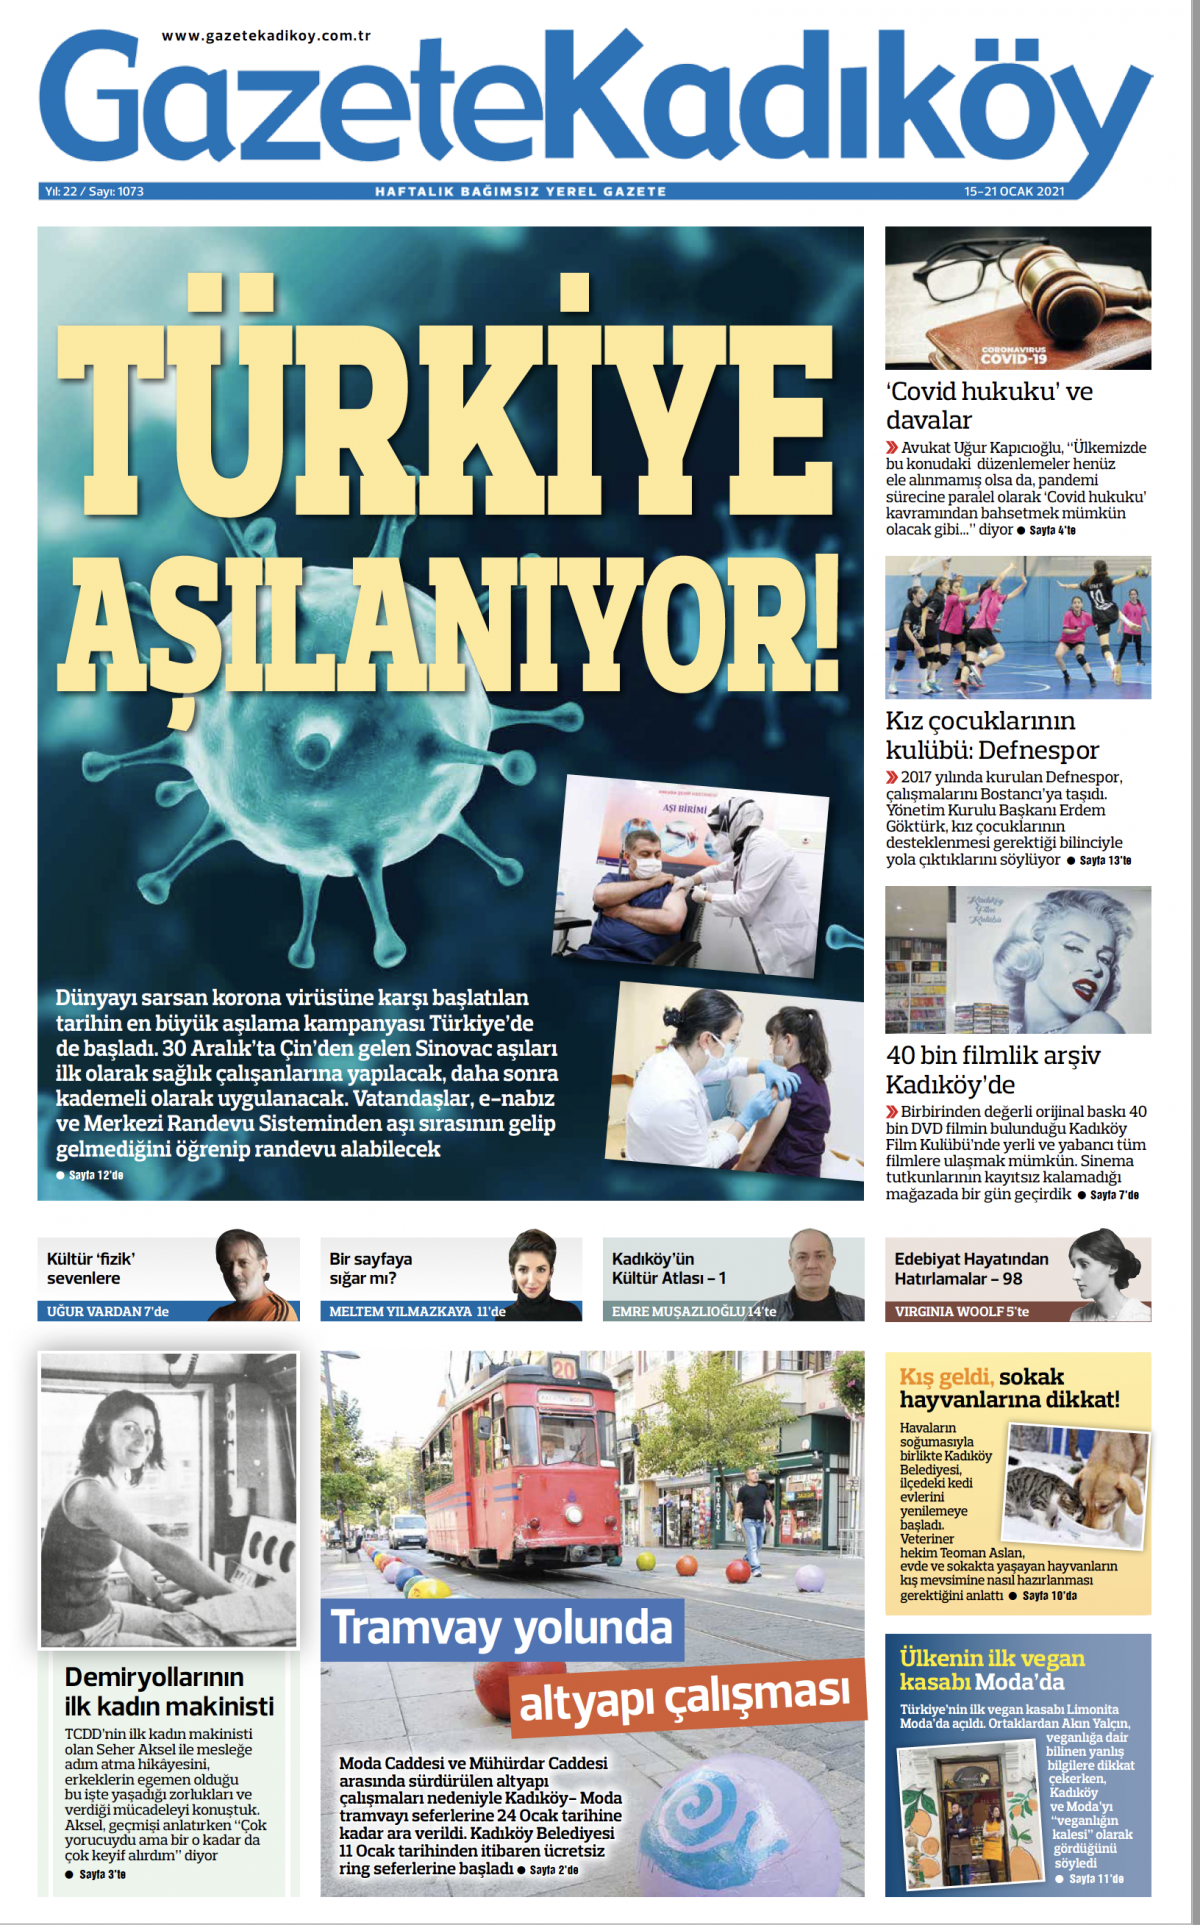 Gazete Kadıköy - 1073.Sayı